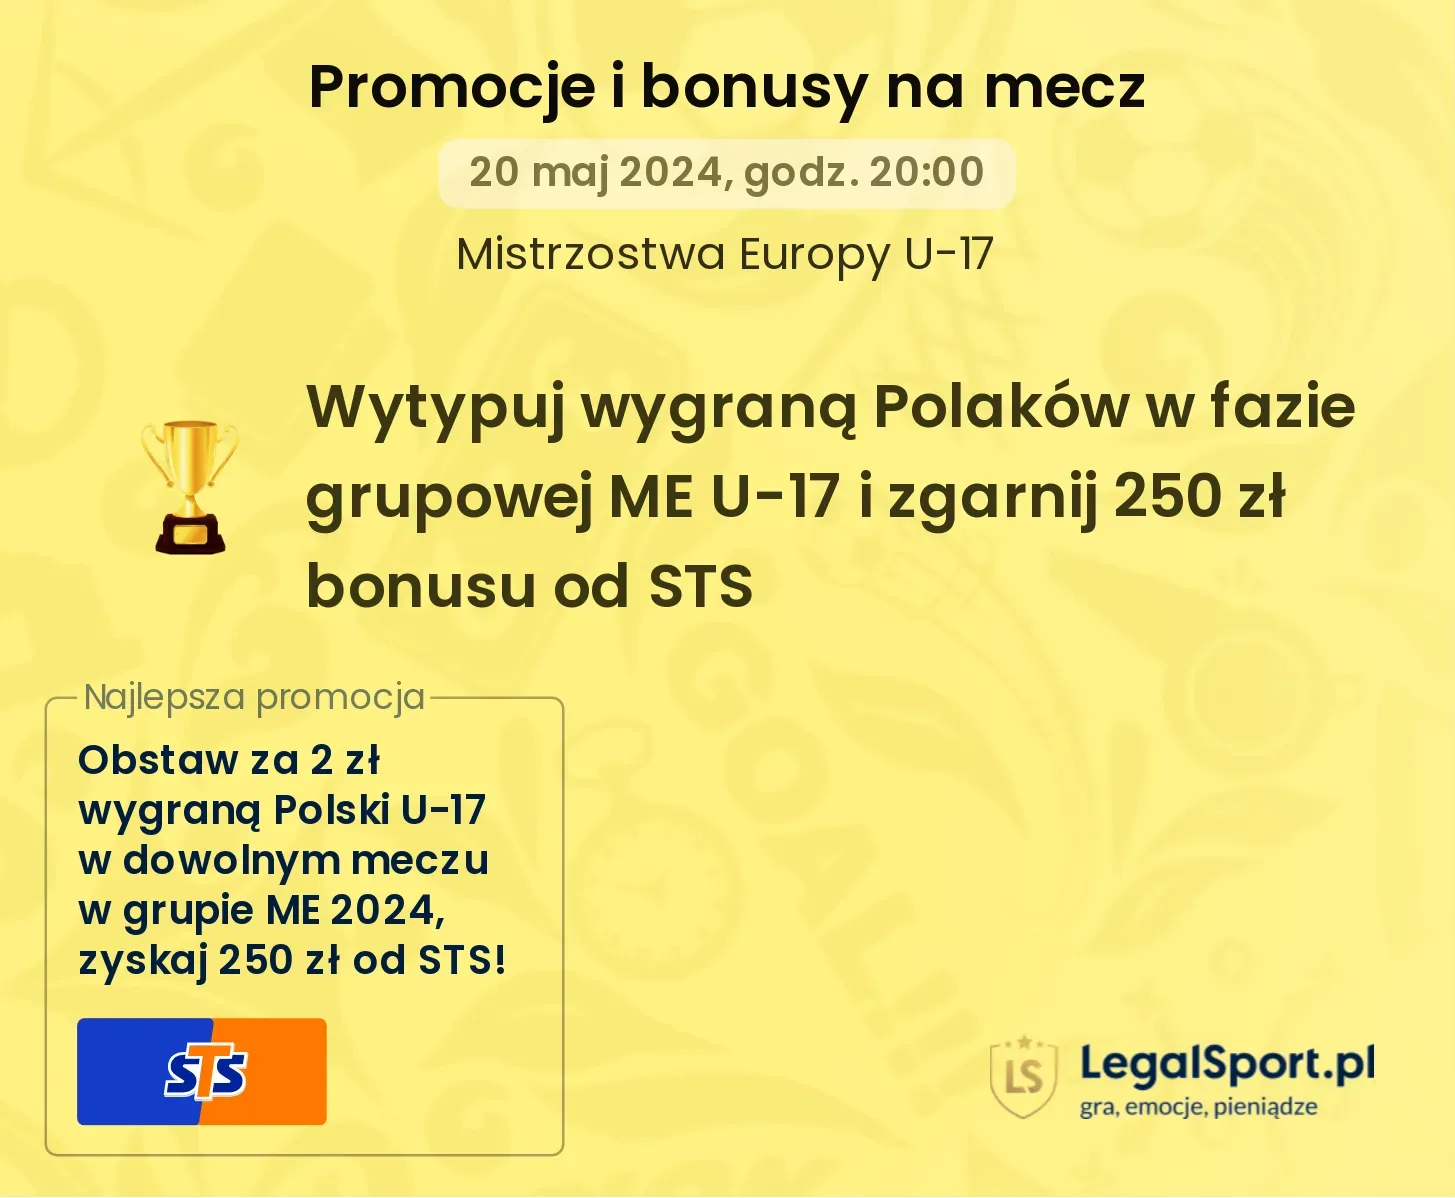 Wytypuj wygraną Polaków w fazie grupowej ME U-17 i zgarnij 250 zł bonusu od STS promocje bonusy na mecz